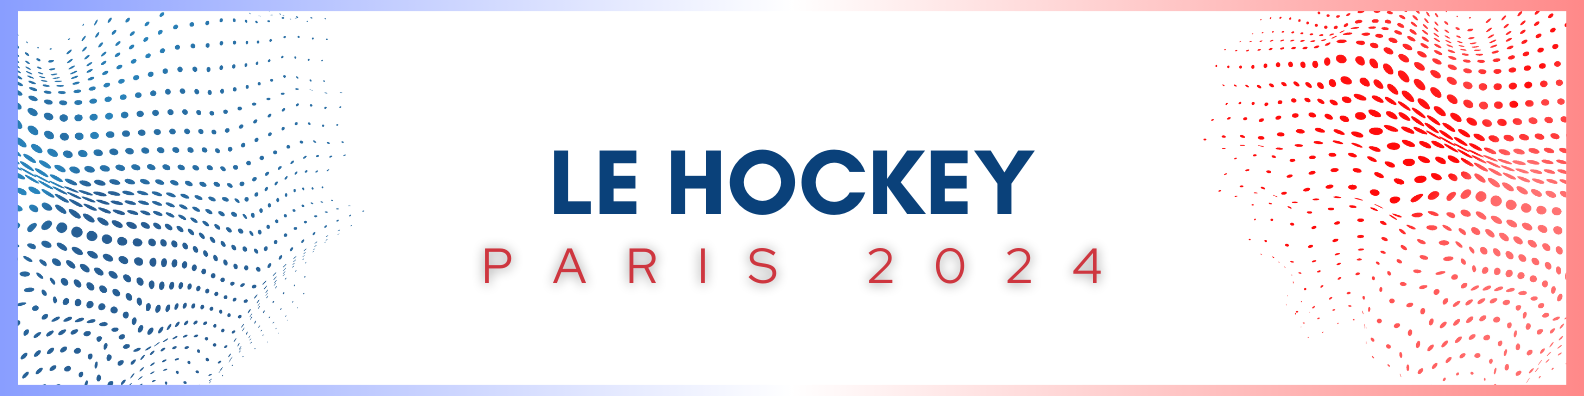 Le hockey Paris 2024